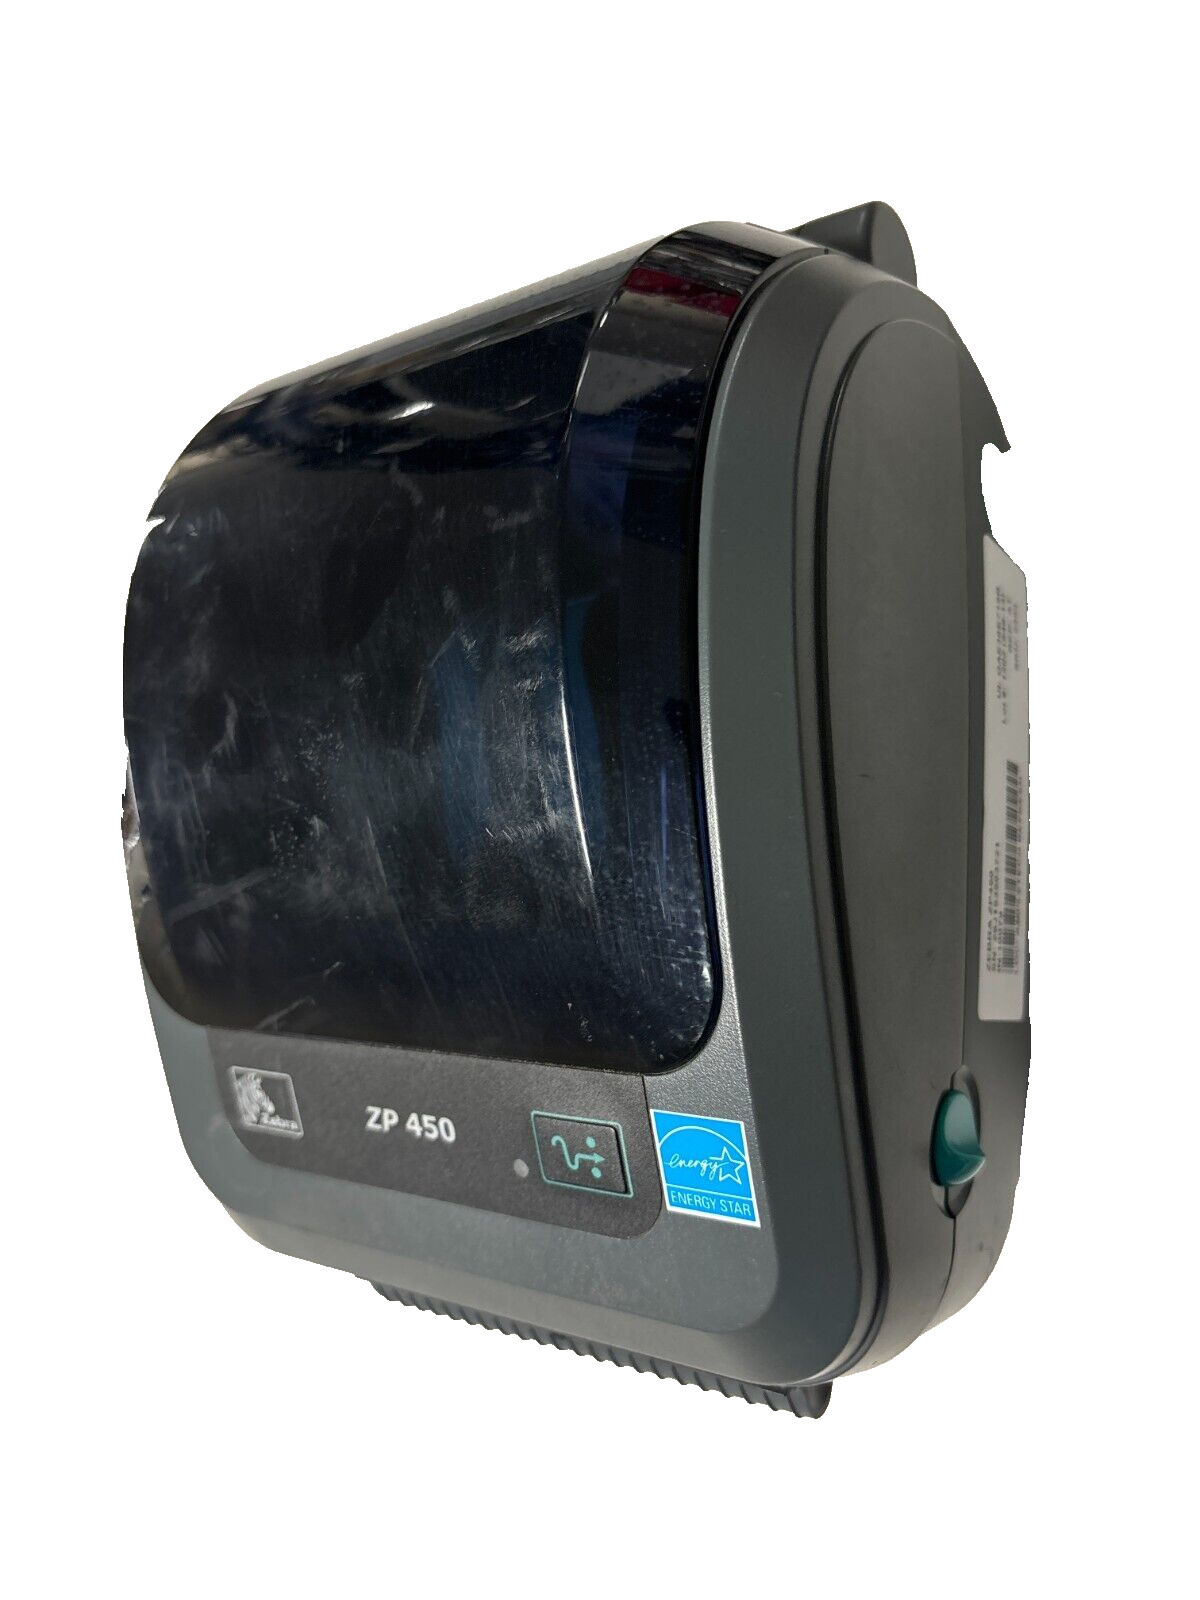 Zebra ZP 450 Thermal Label Printer - ZP450-0501-0006A